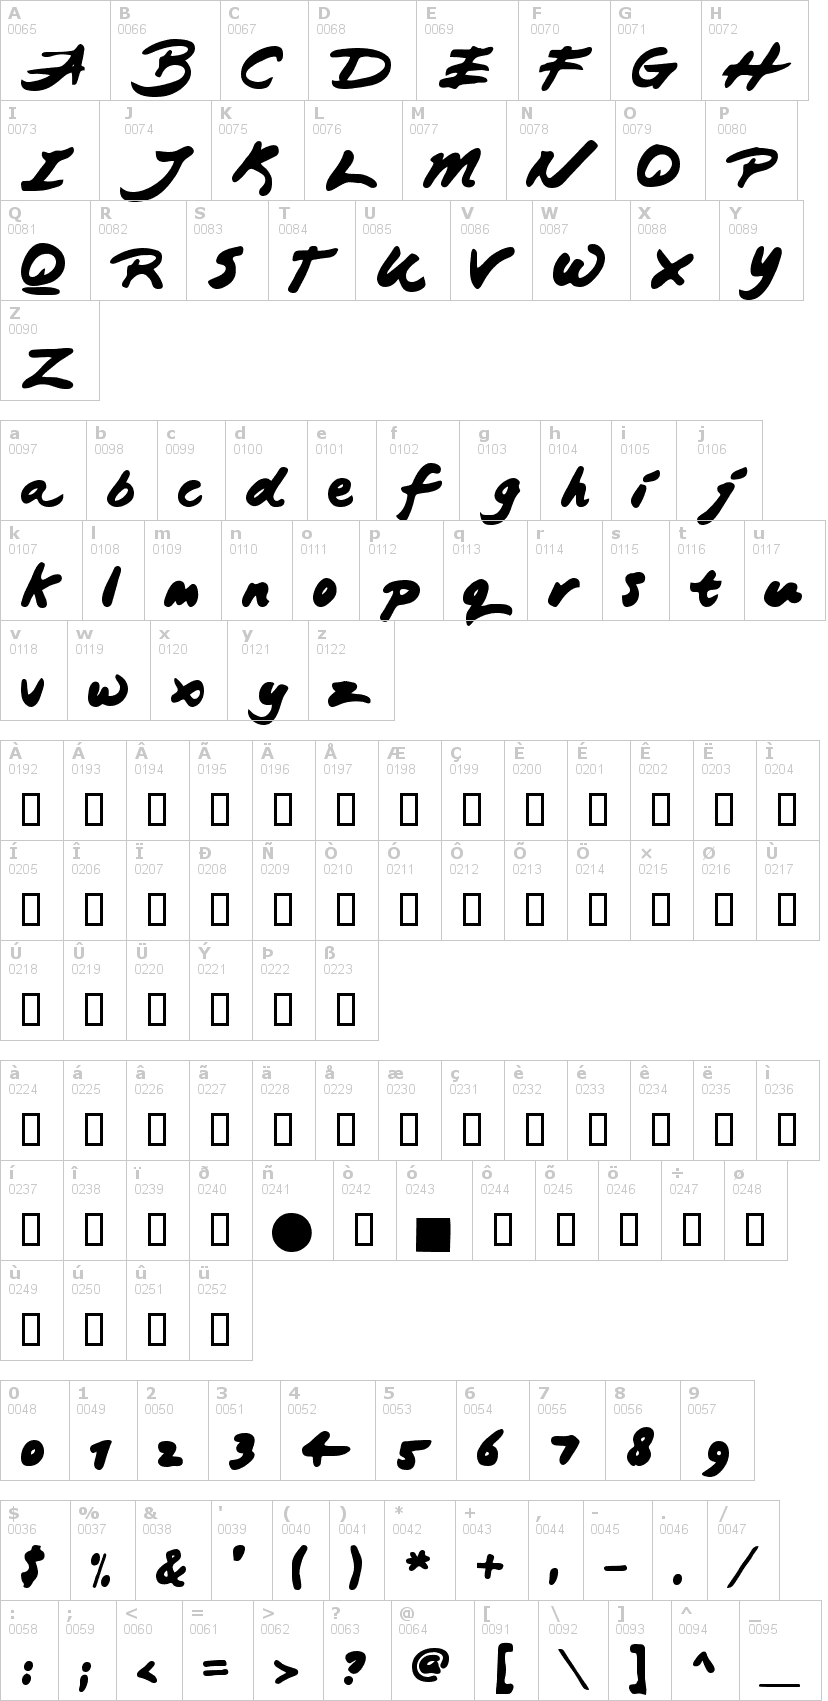 Lettere dell'alfabeto del font japanese-brush con le quali è possibile realizzare adesivi prespaziati